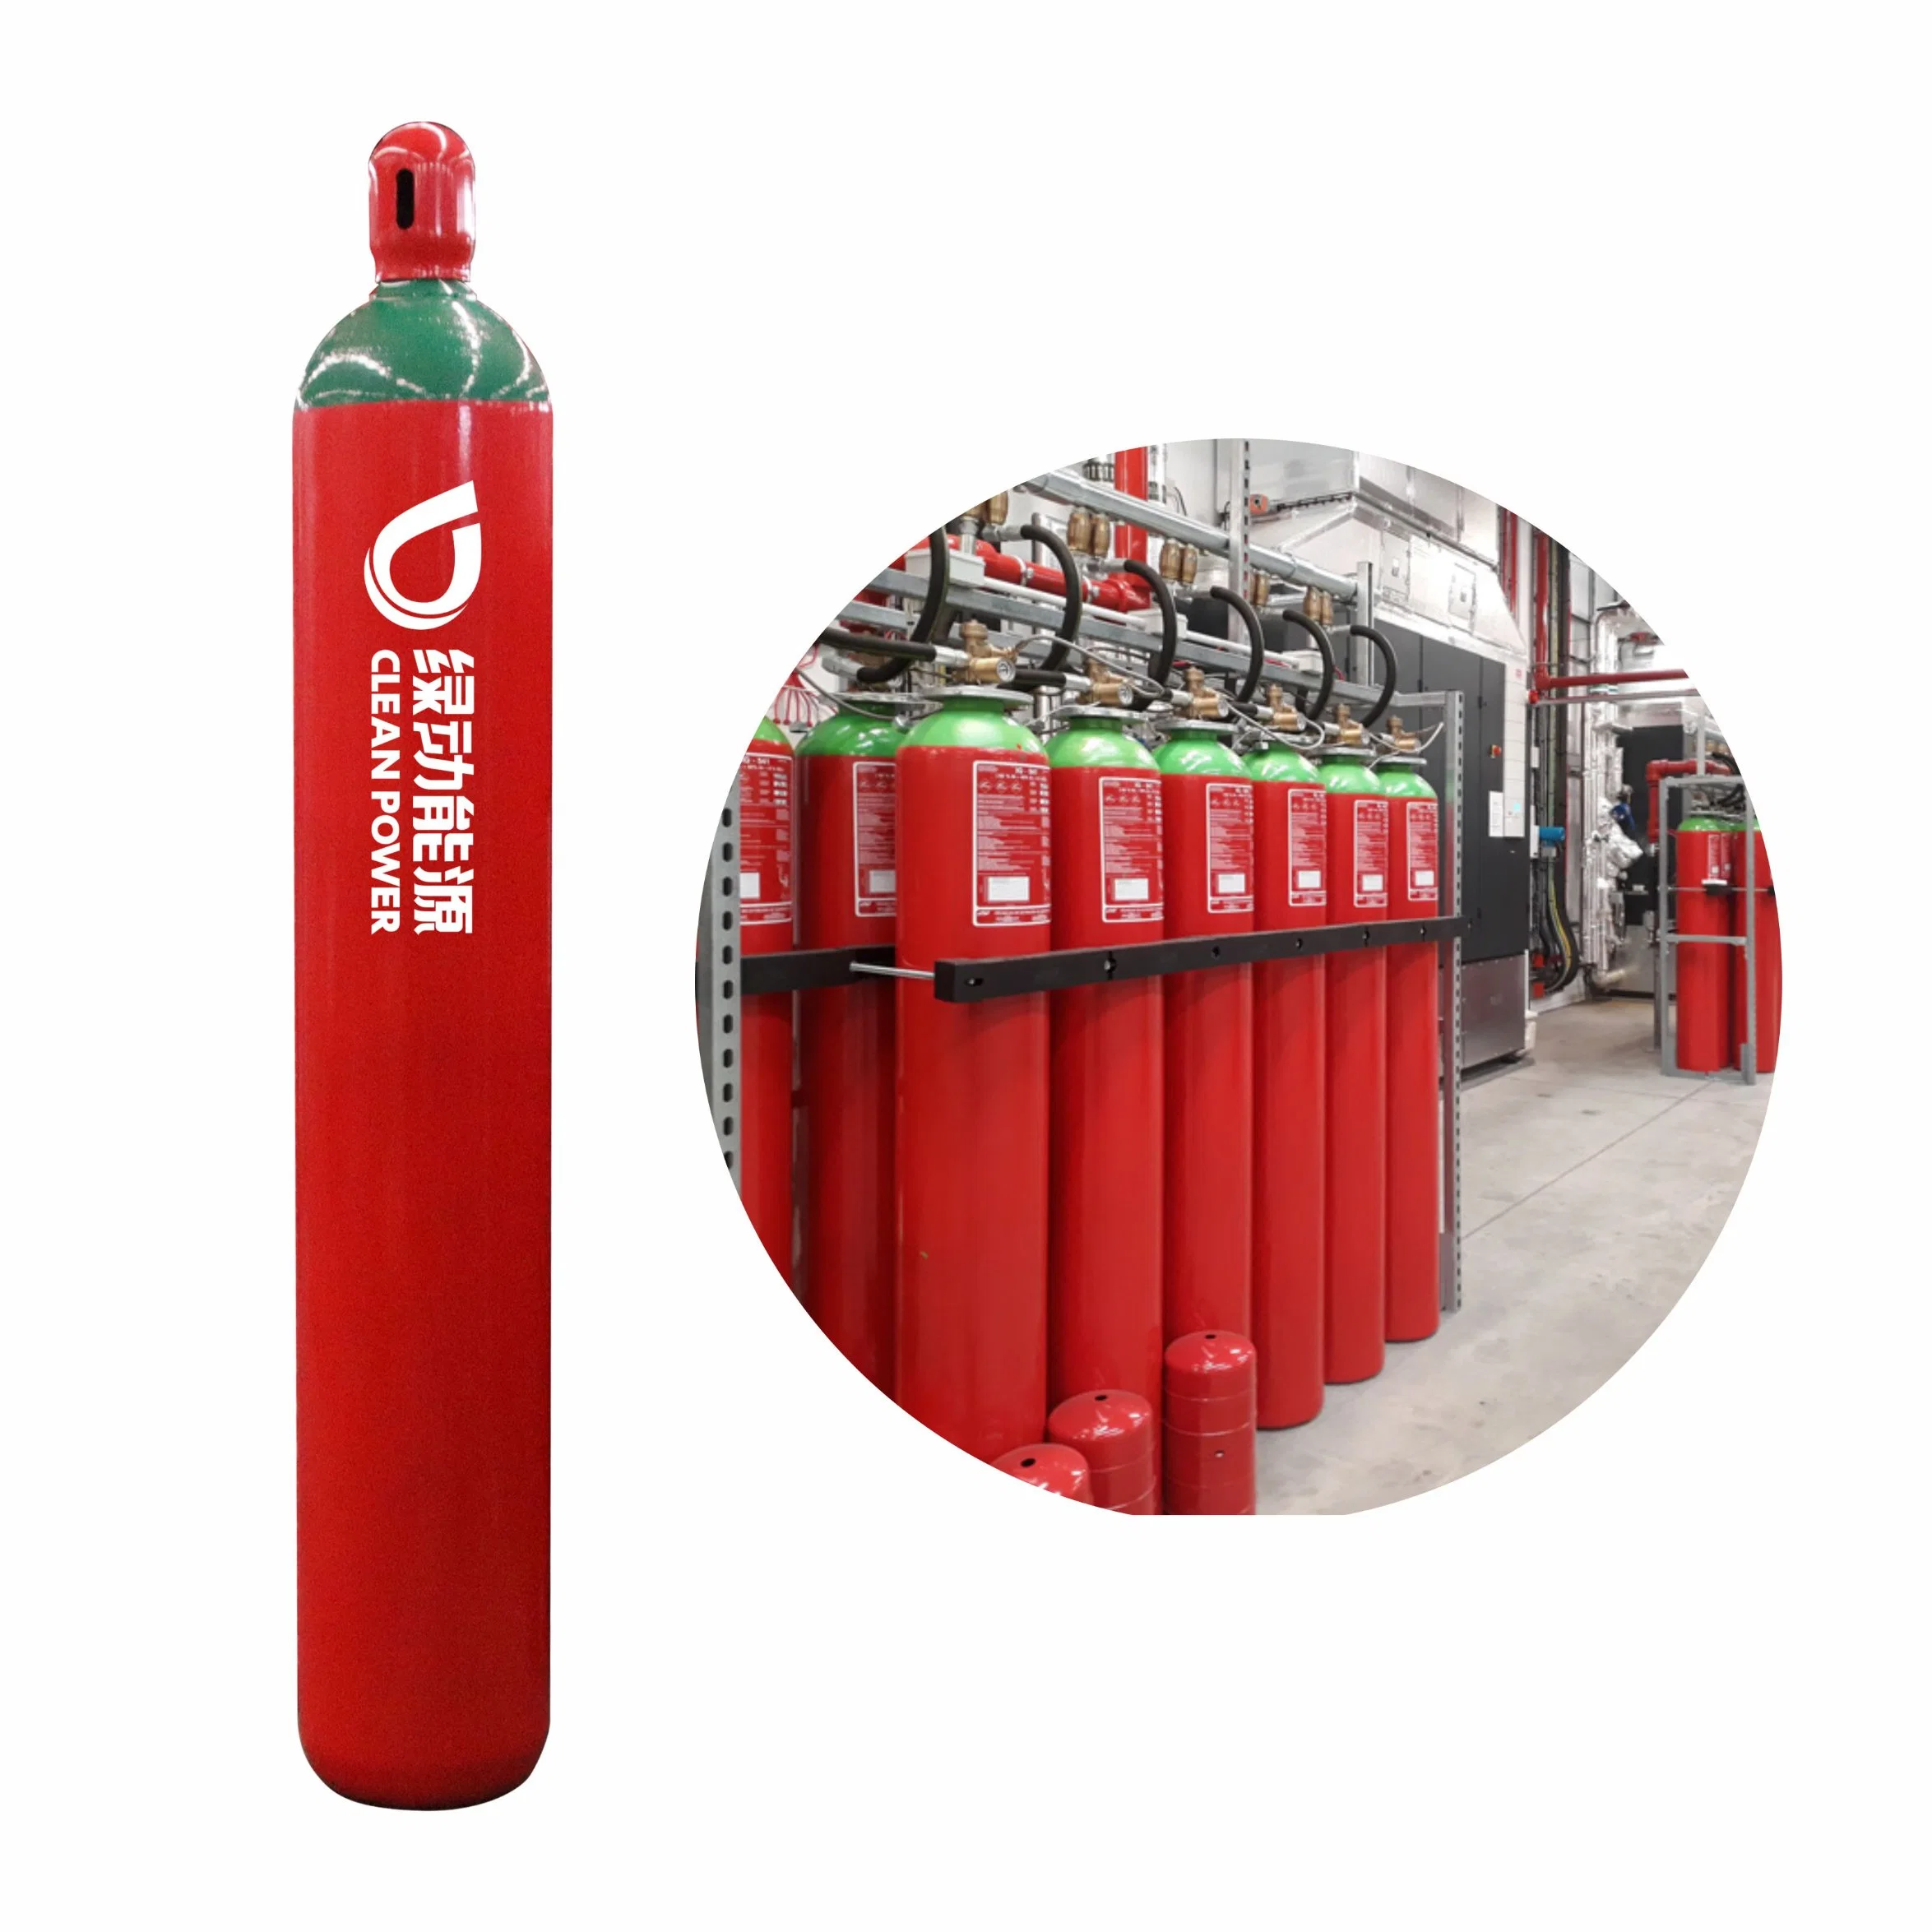 La lucha contra incendios Tped marca ld el equipo de seguridad del cilindro de gas CO2